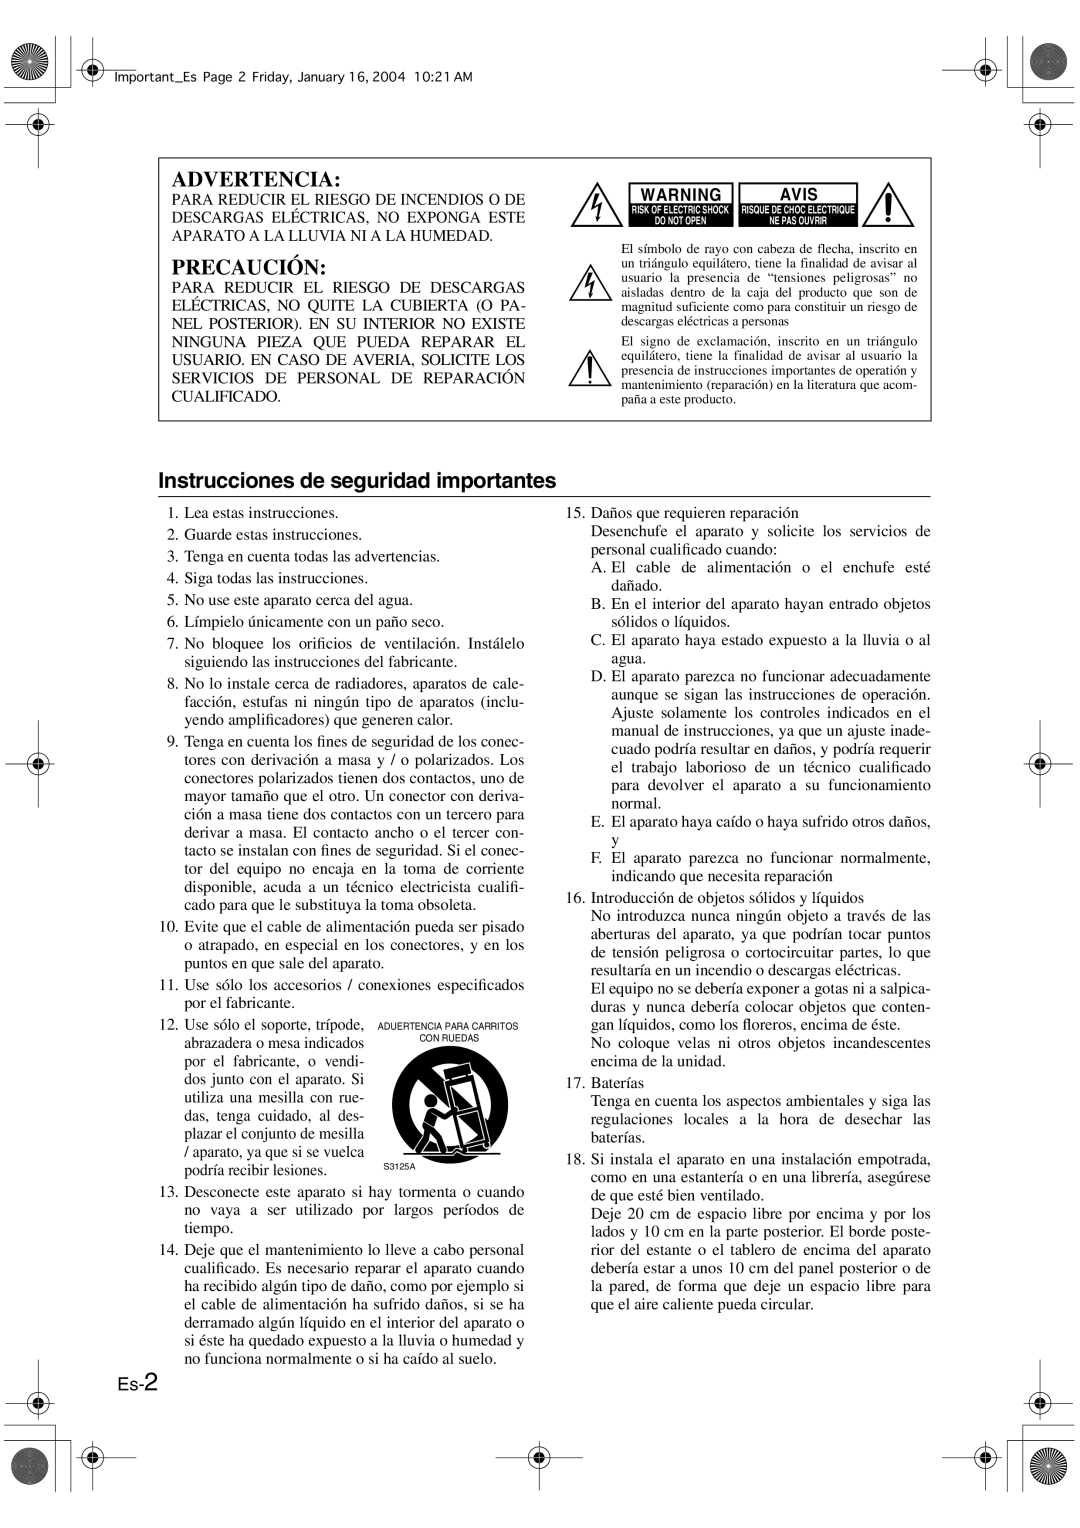 Onkyo HT-R420 manual Advertencia, Precaución, Instrucciones de seguridad importantes, Es-2, Avis 